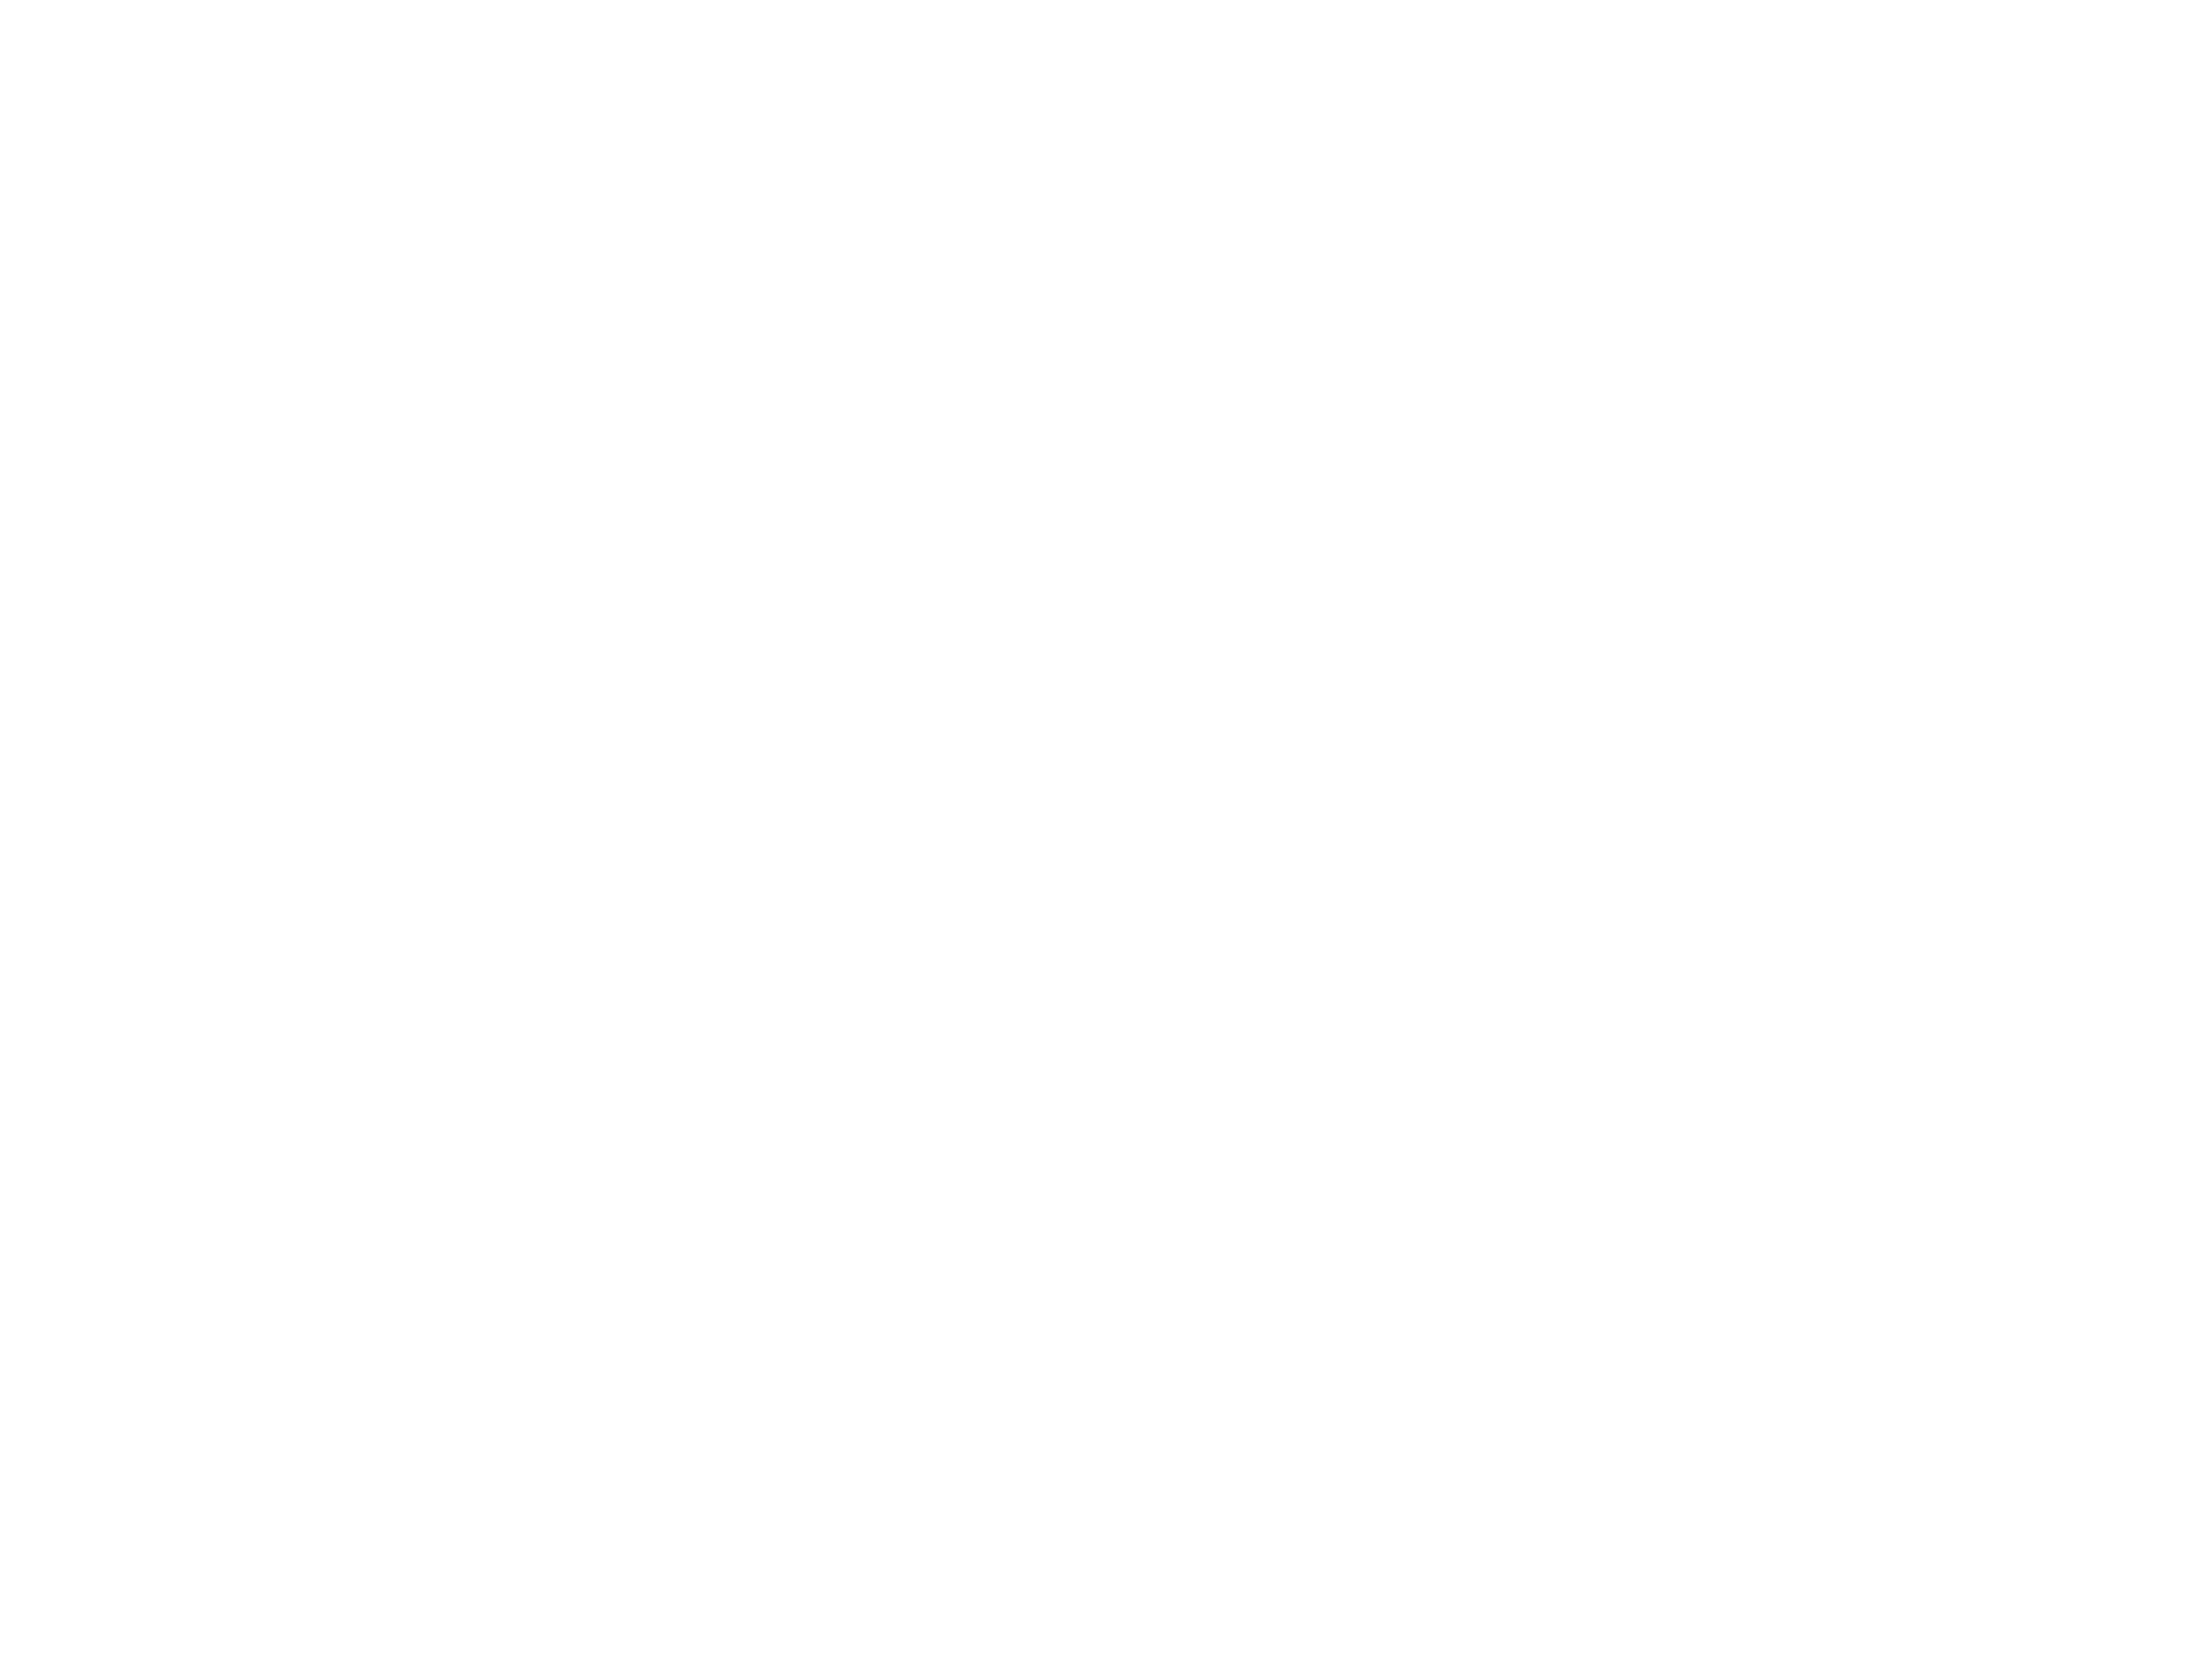 Sound Patch